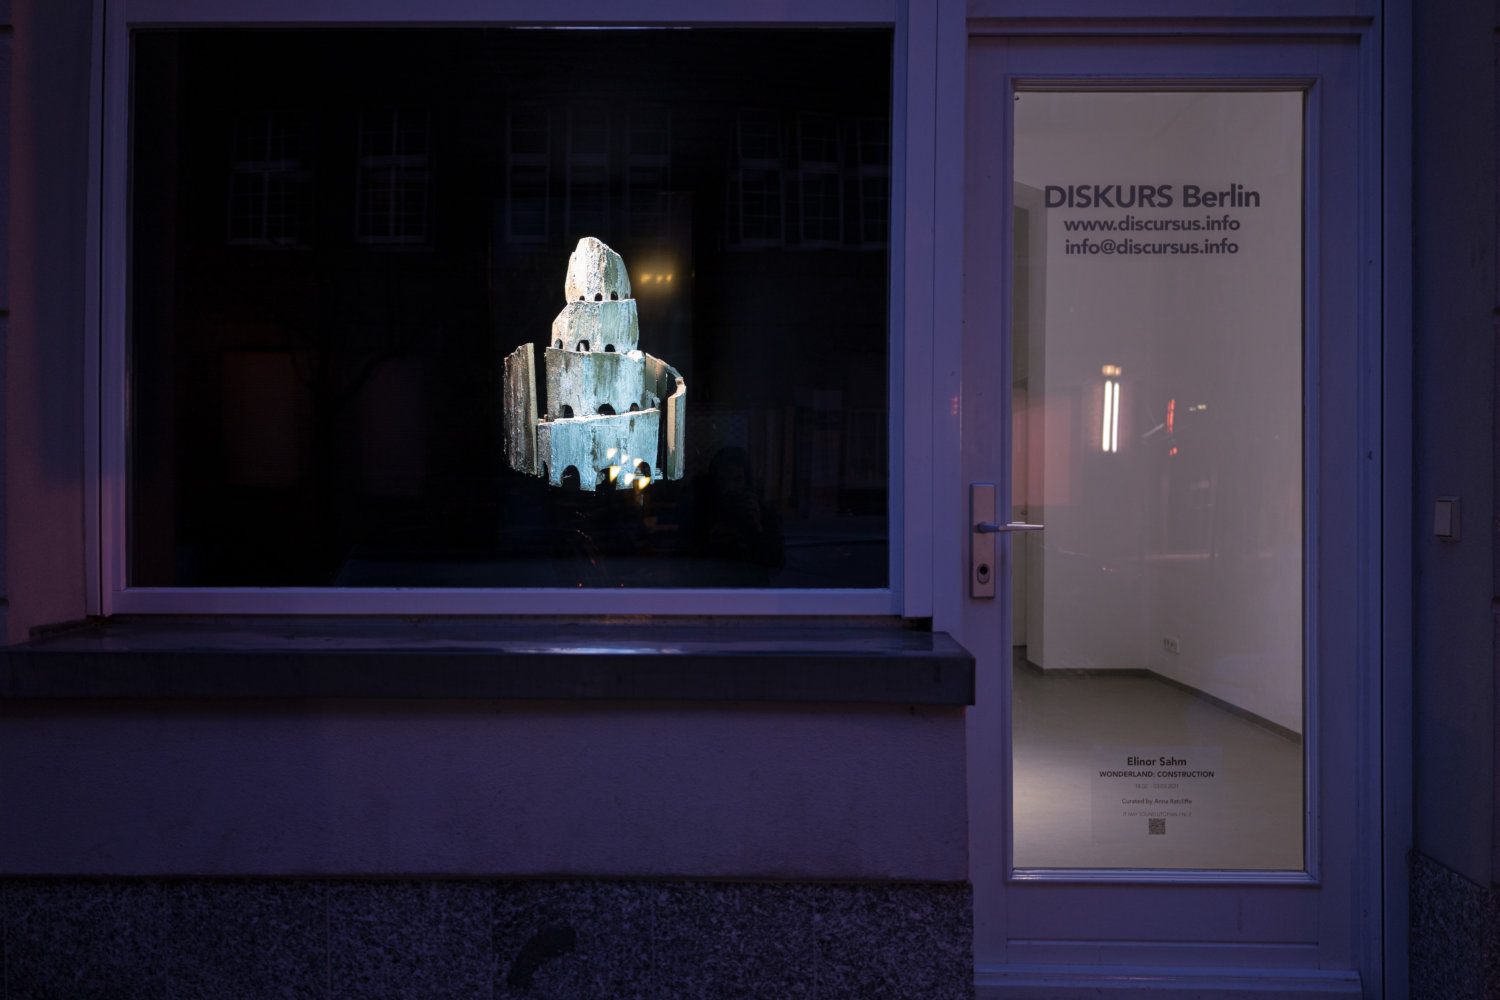 Schaufenster-Ausstellung bei Diskurs Berlin, links ein großes Fenster, wo ein Turm aus Beton zu sehen ist, rechts eine Tür, wo helles Licht erkennbar ist